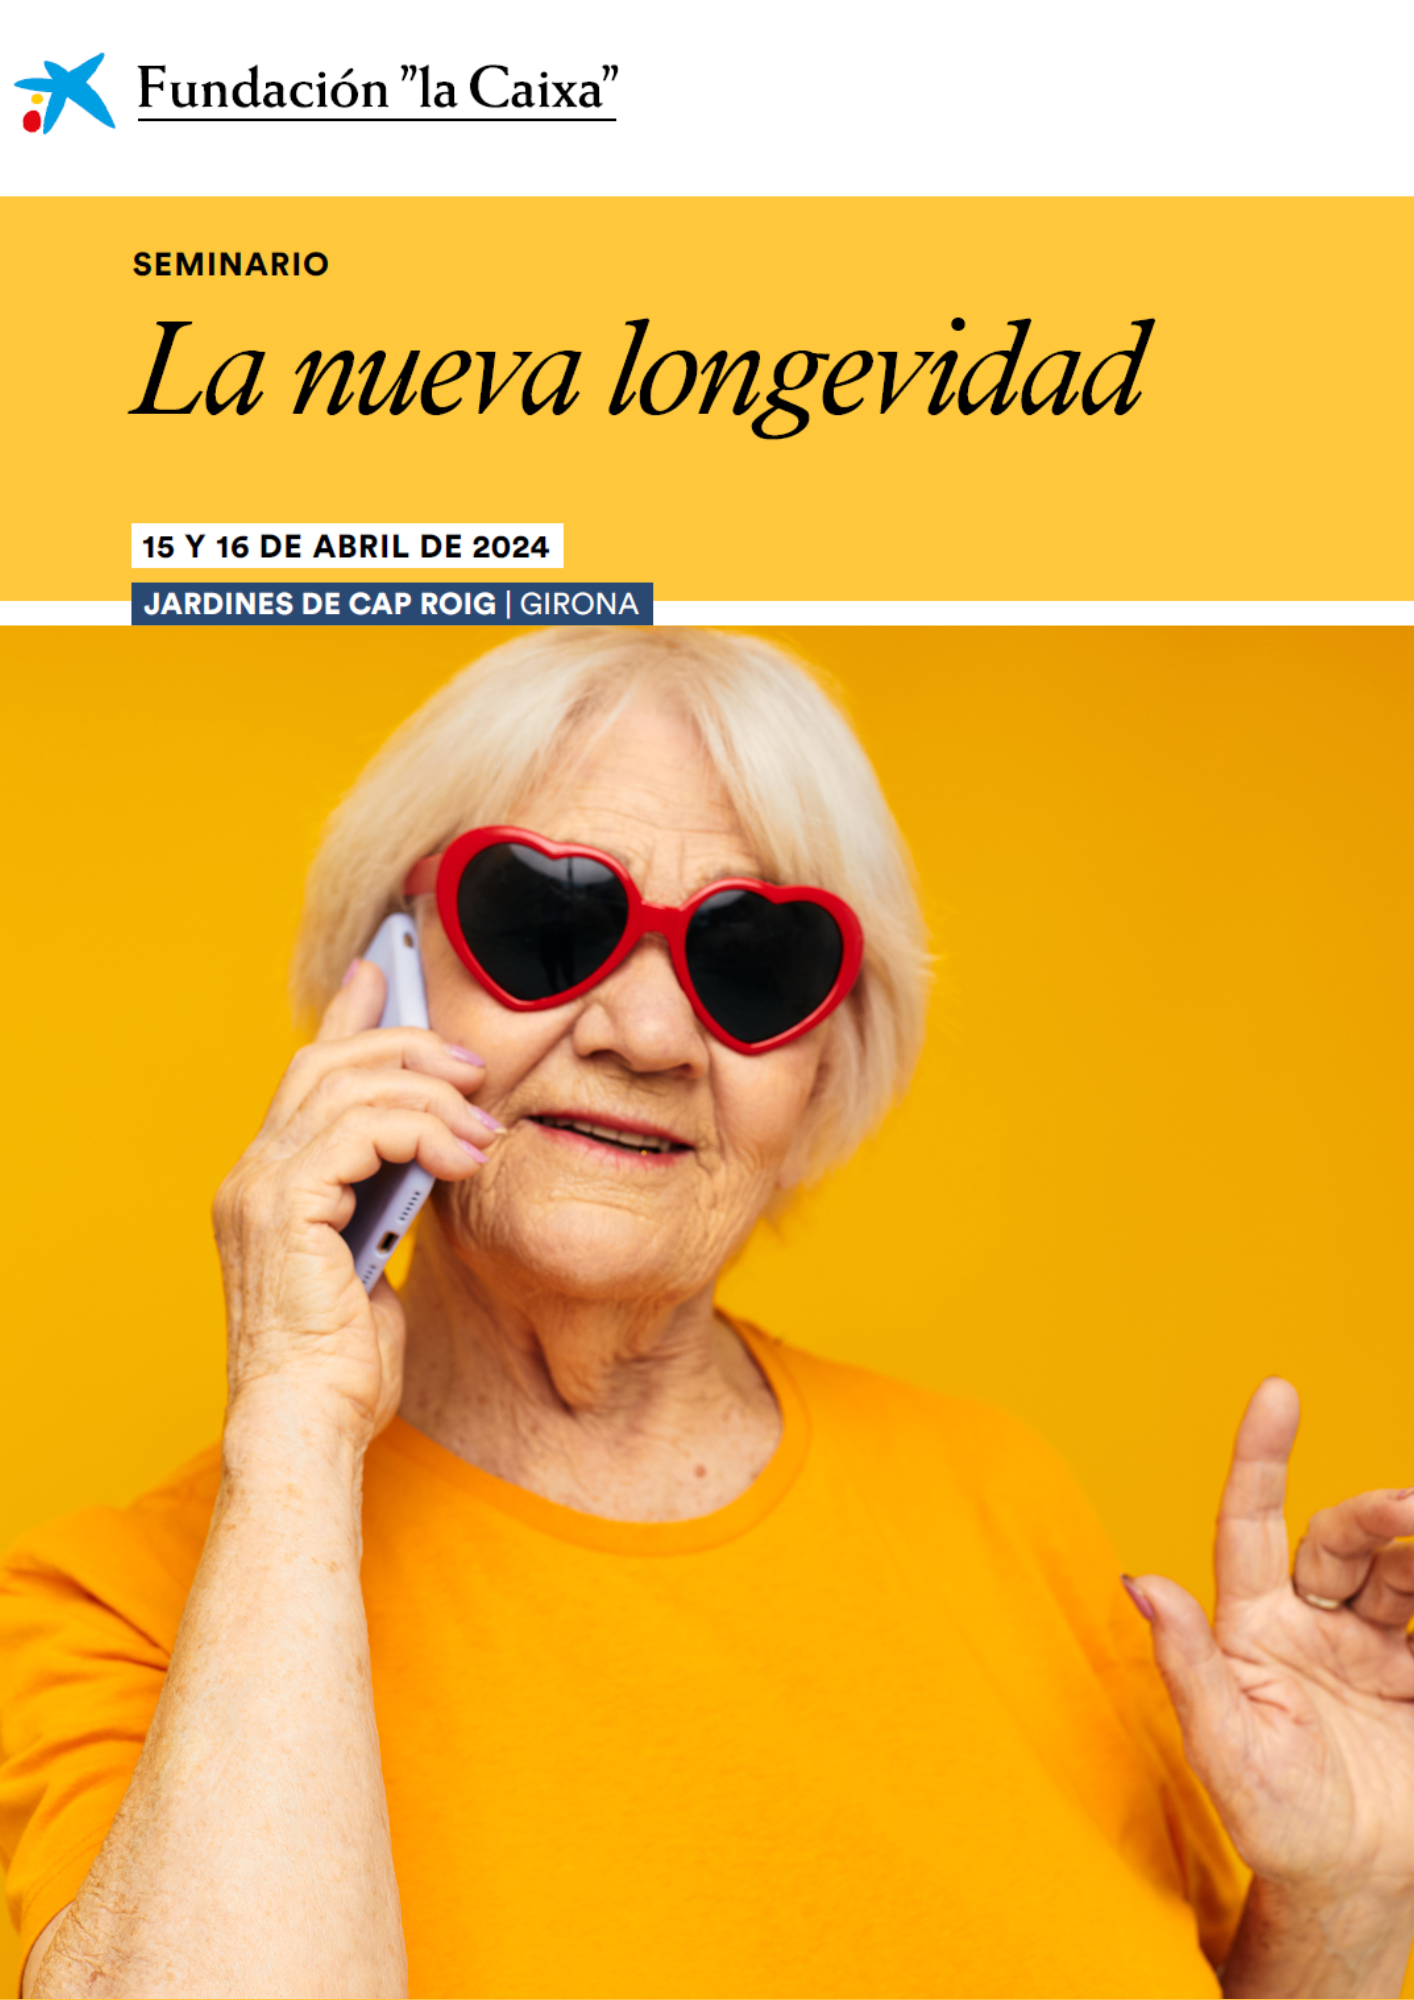 Cartel del seminario: "La nueva longevidad"